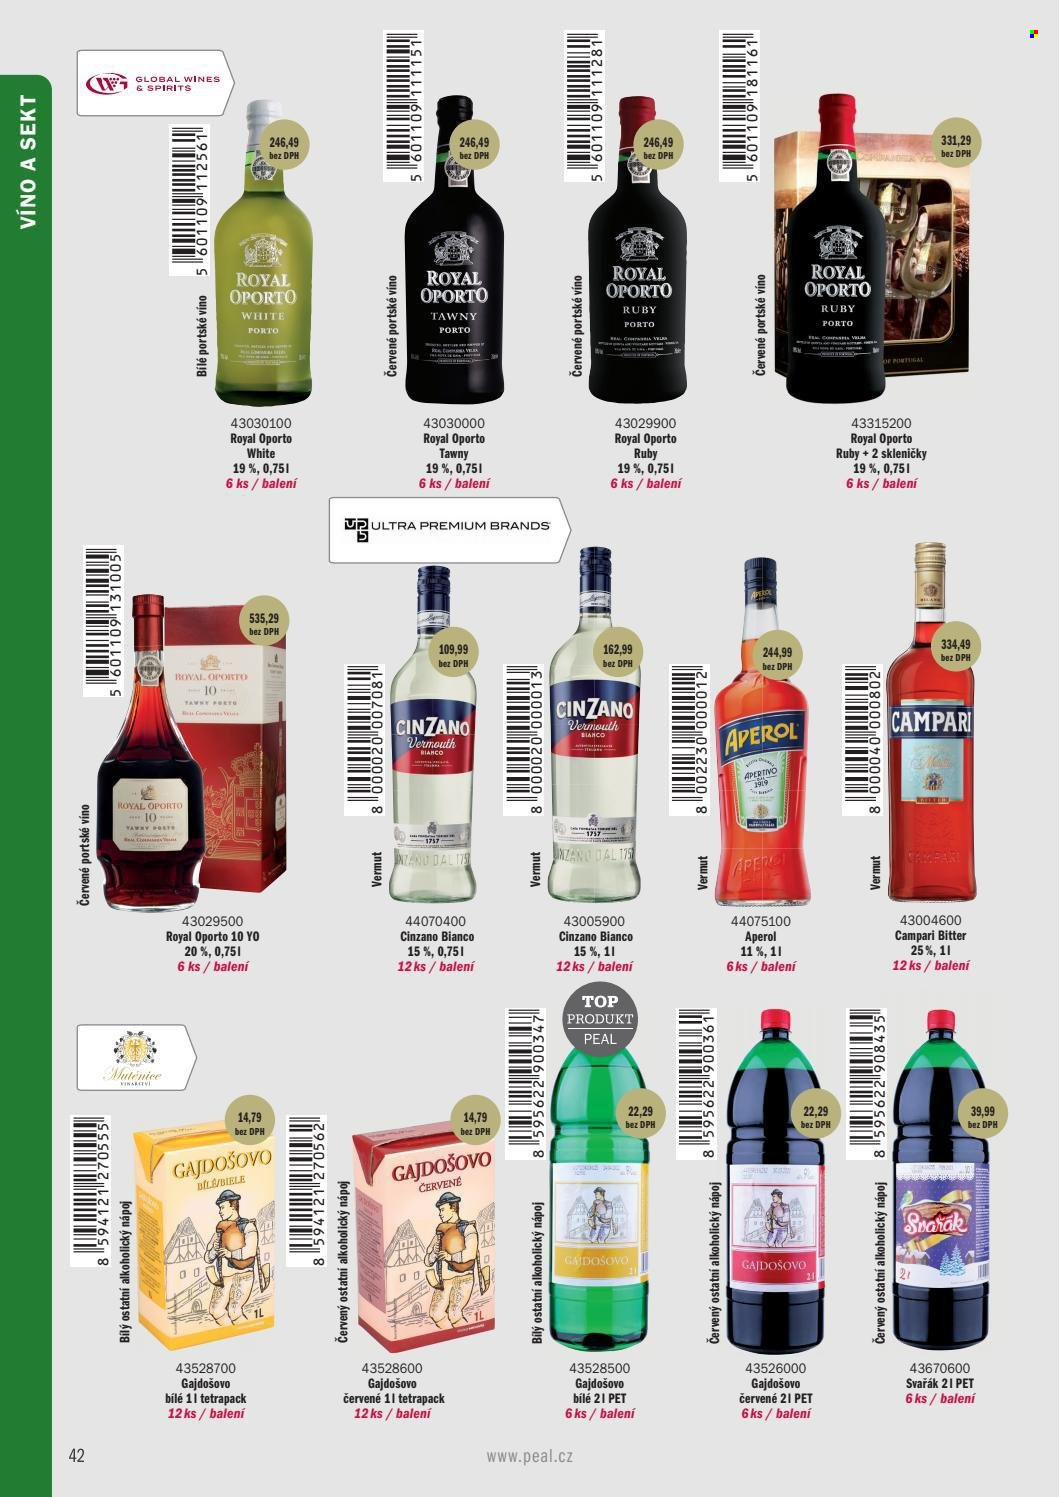 thumbnail - Leták PEAL - Produkty v akci - alkohol, sekt, víno, Vinařství Mutěnice, svařené víno, Gajdošovo, Royal Oporto, portské víno, likér, Aperol, aperitiv, Cinzano, Campari Bitter, vermouth, Bitter. Strana 32.